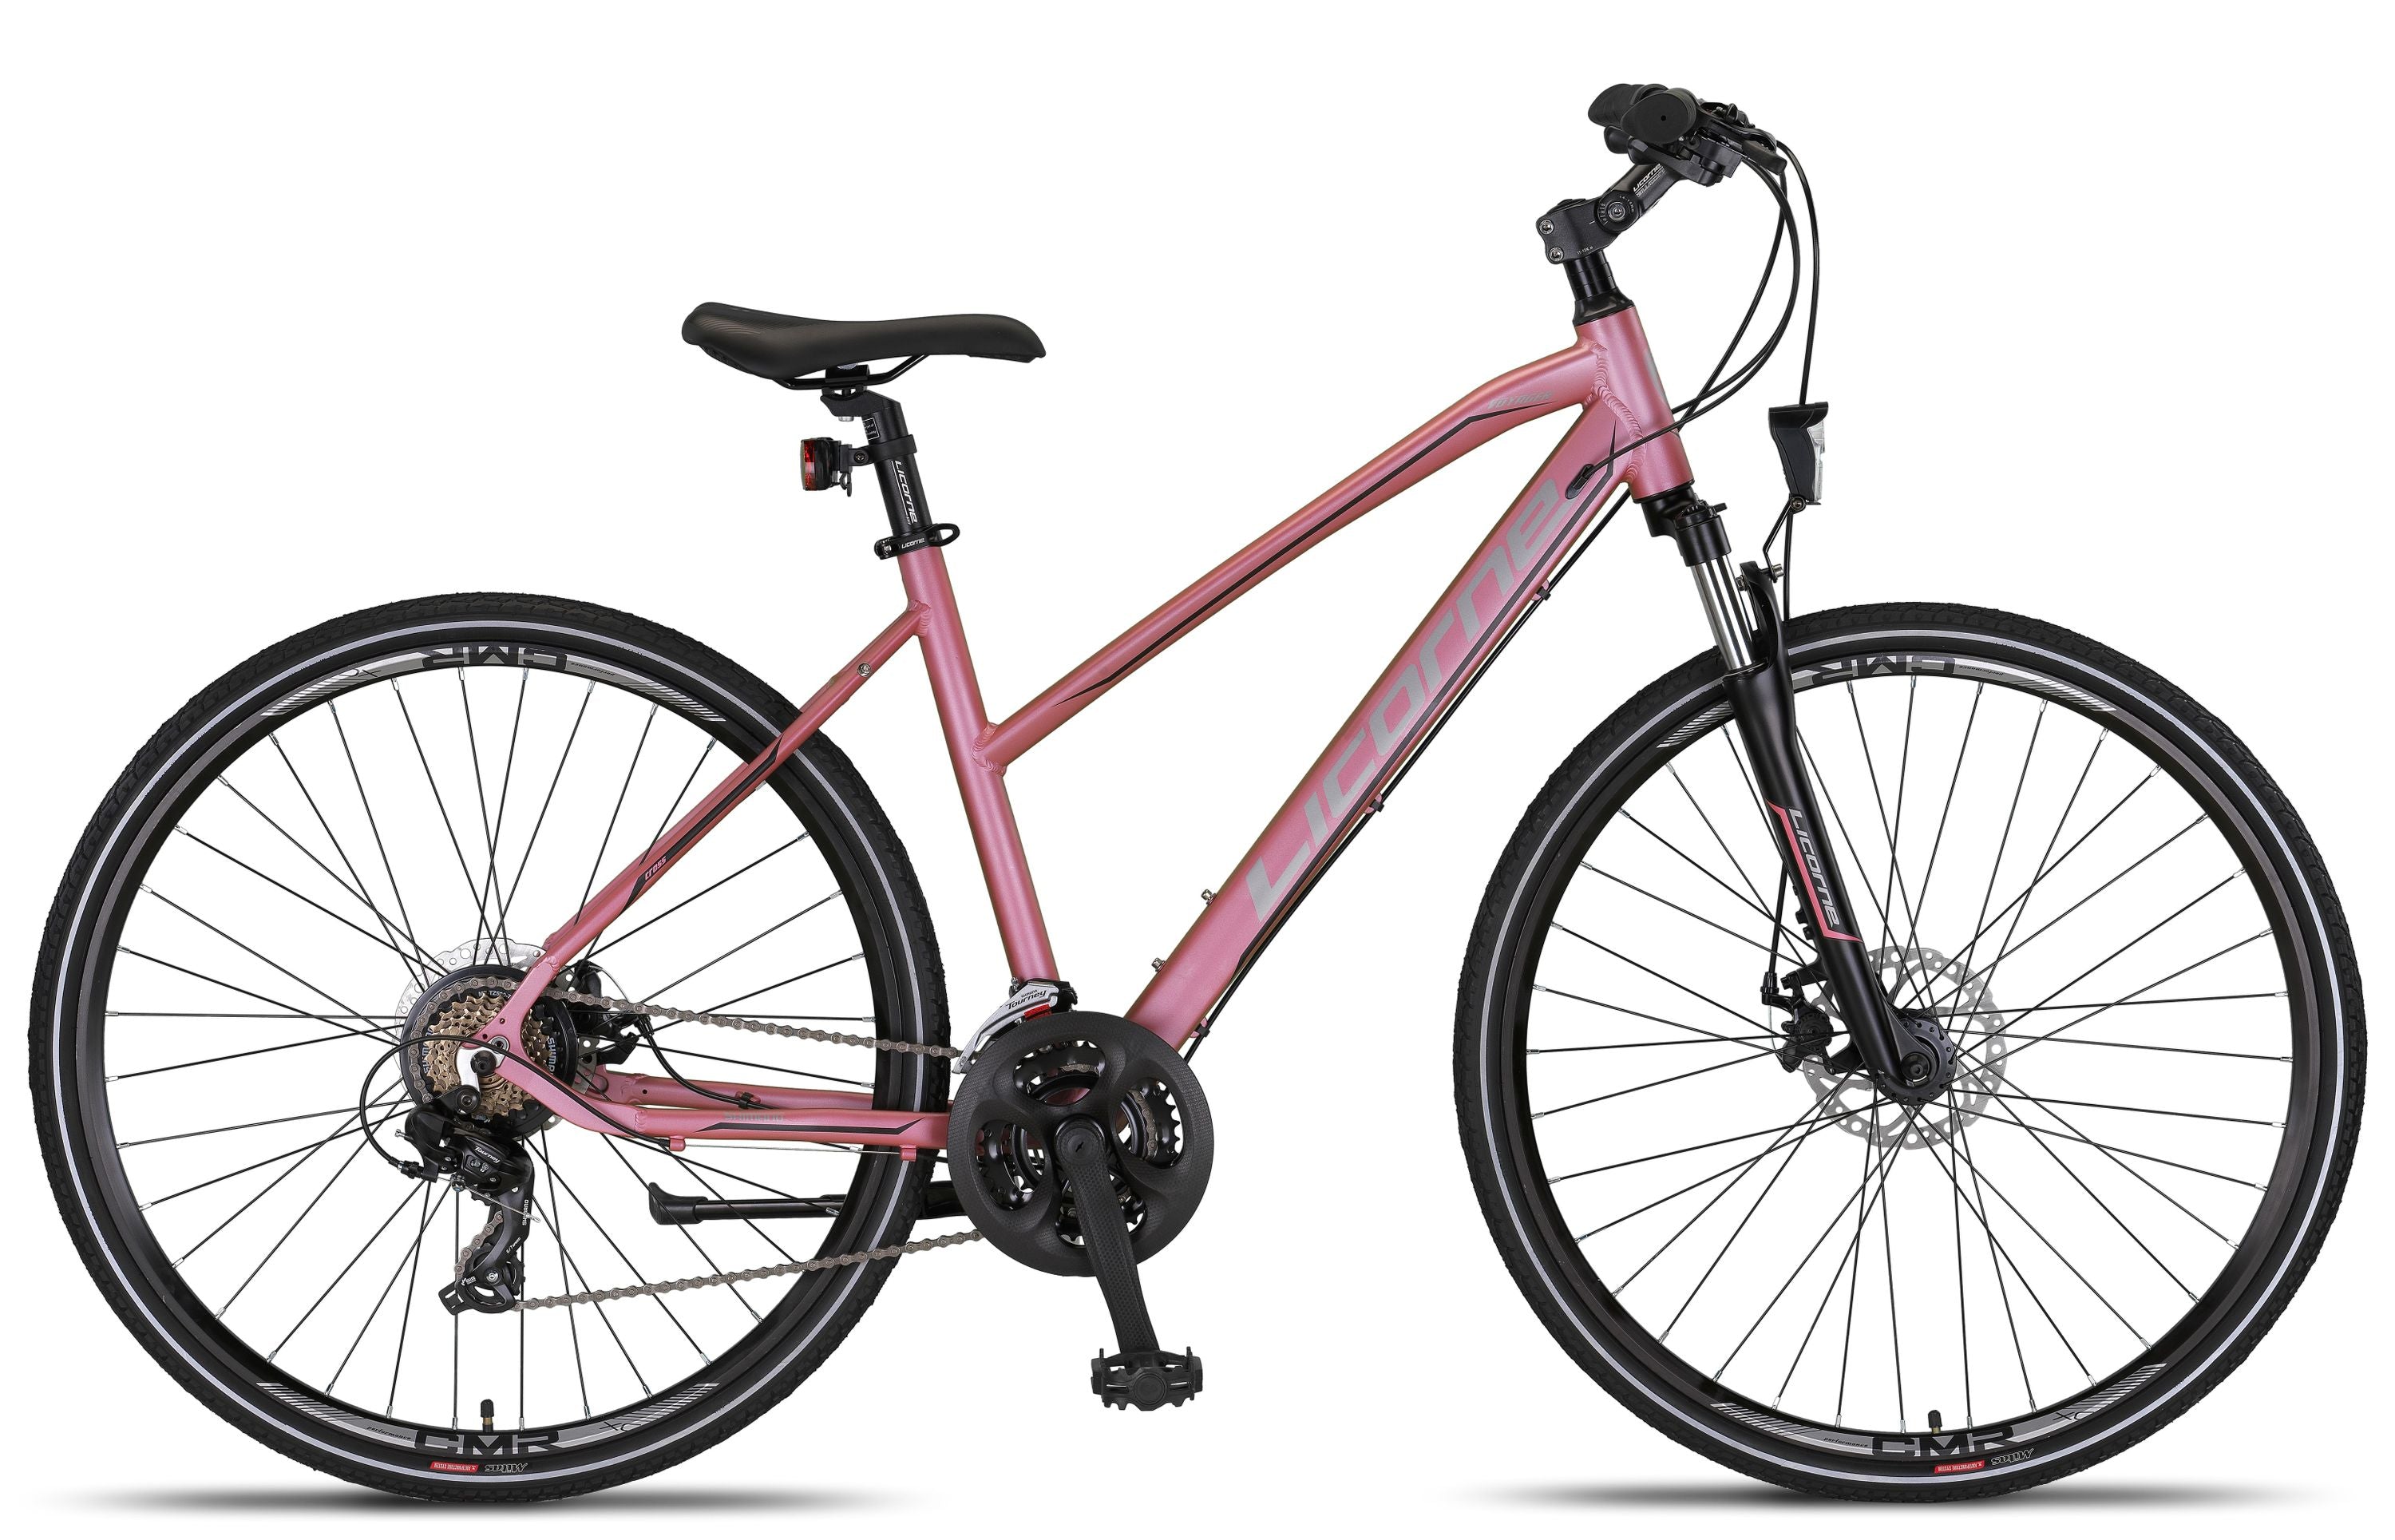 Licorne Bike Premium Voyager Trekking Bike in 28 Zoll - Fahrrad für Jungen, Mädchen, Damen und Herren - 21 Gang-Schaltung - Mountainbike - Crossbike